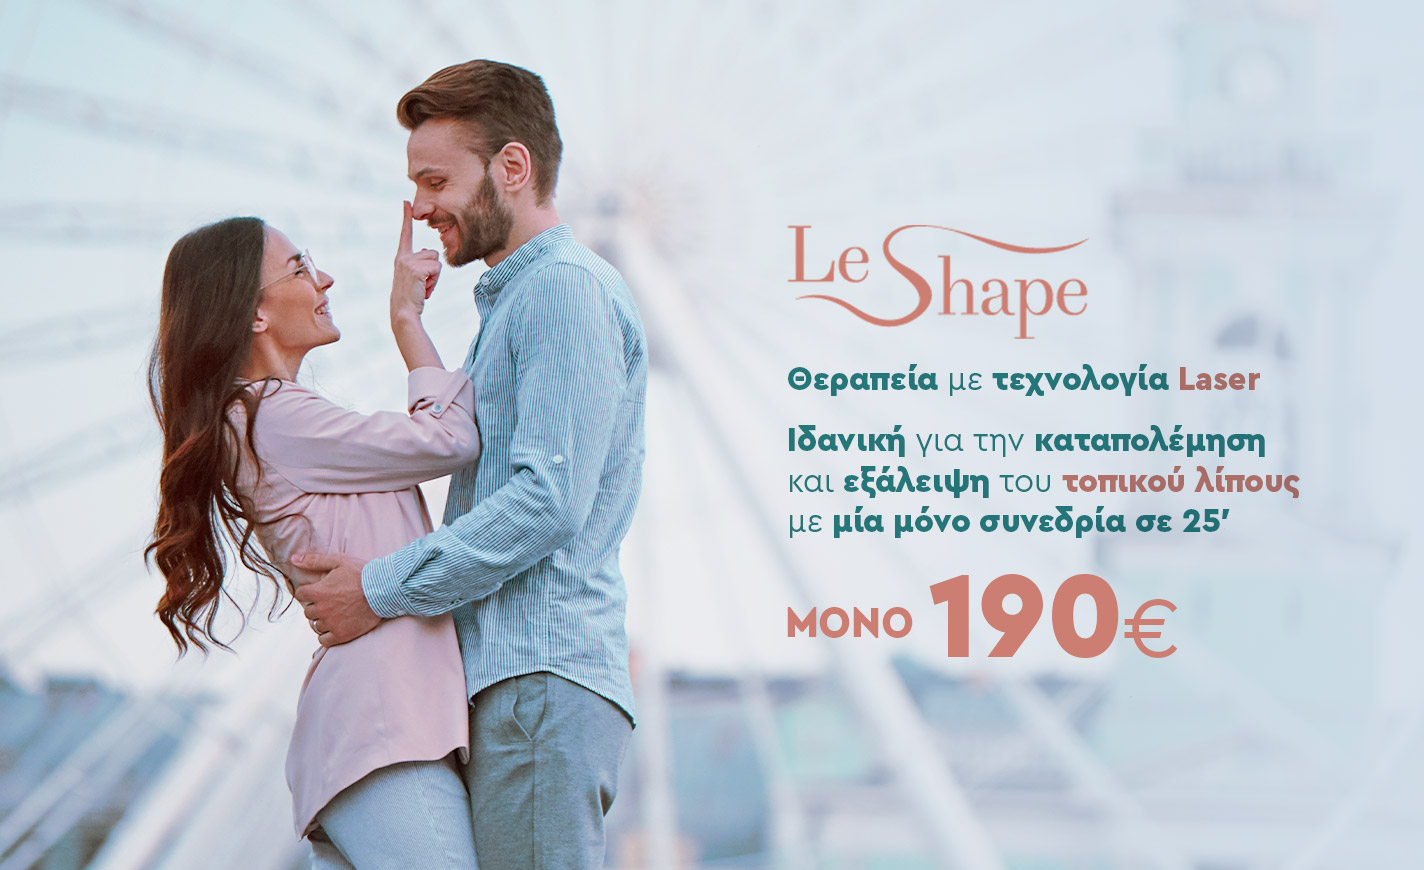 LE SHAPE - A smarter way to reshape yourself